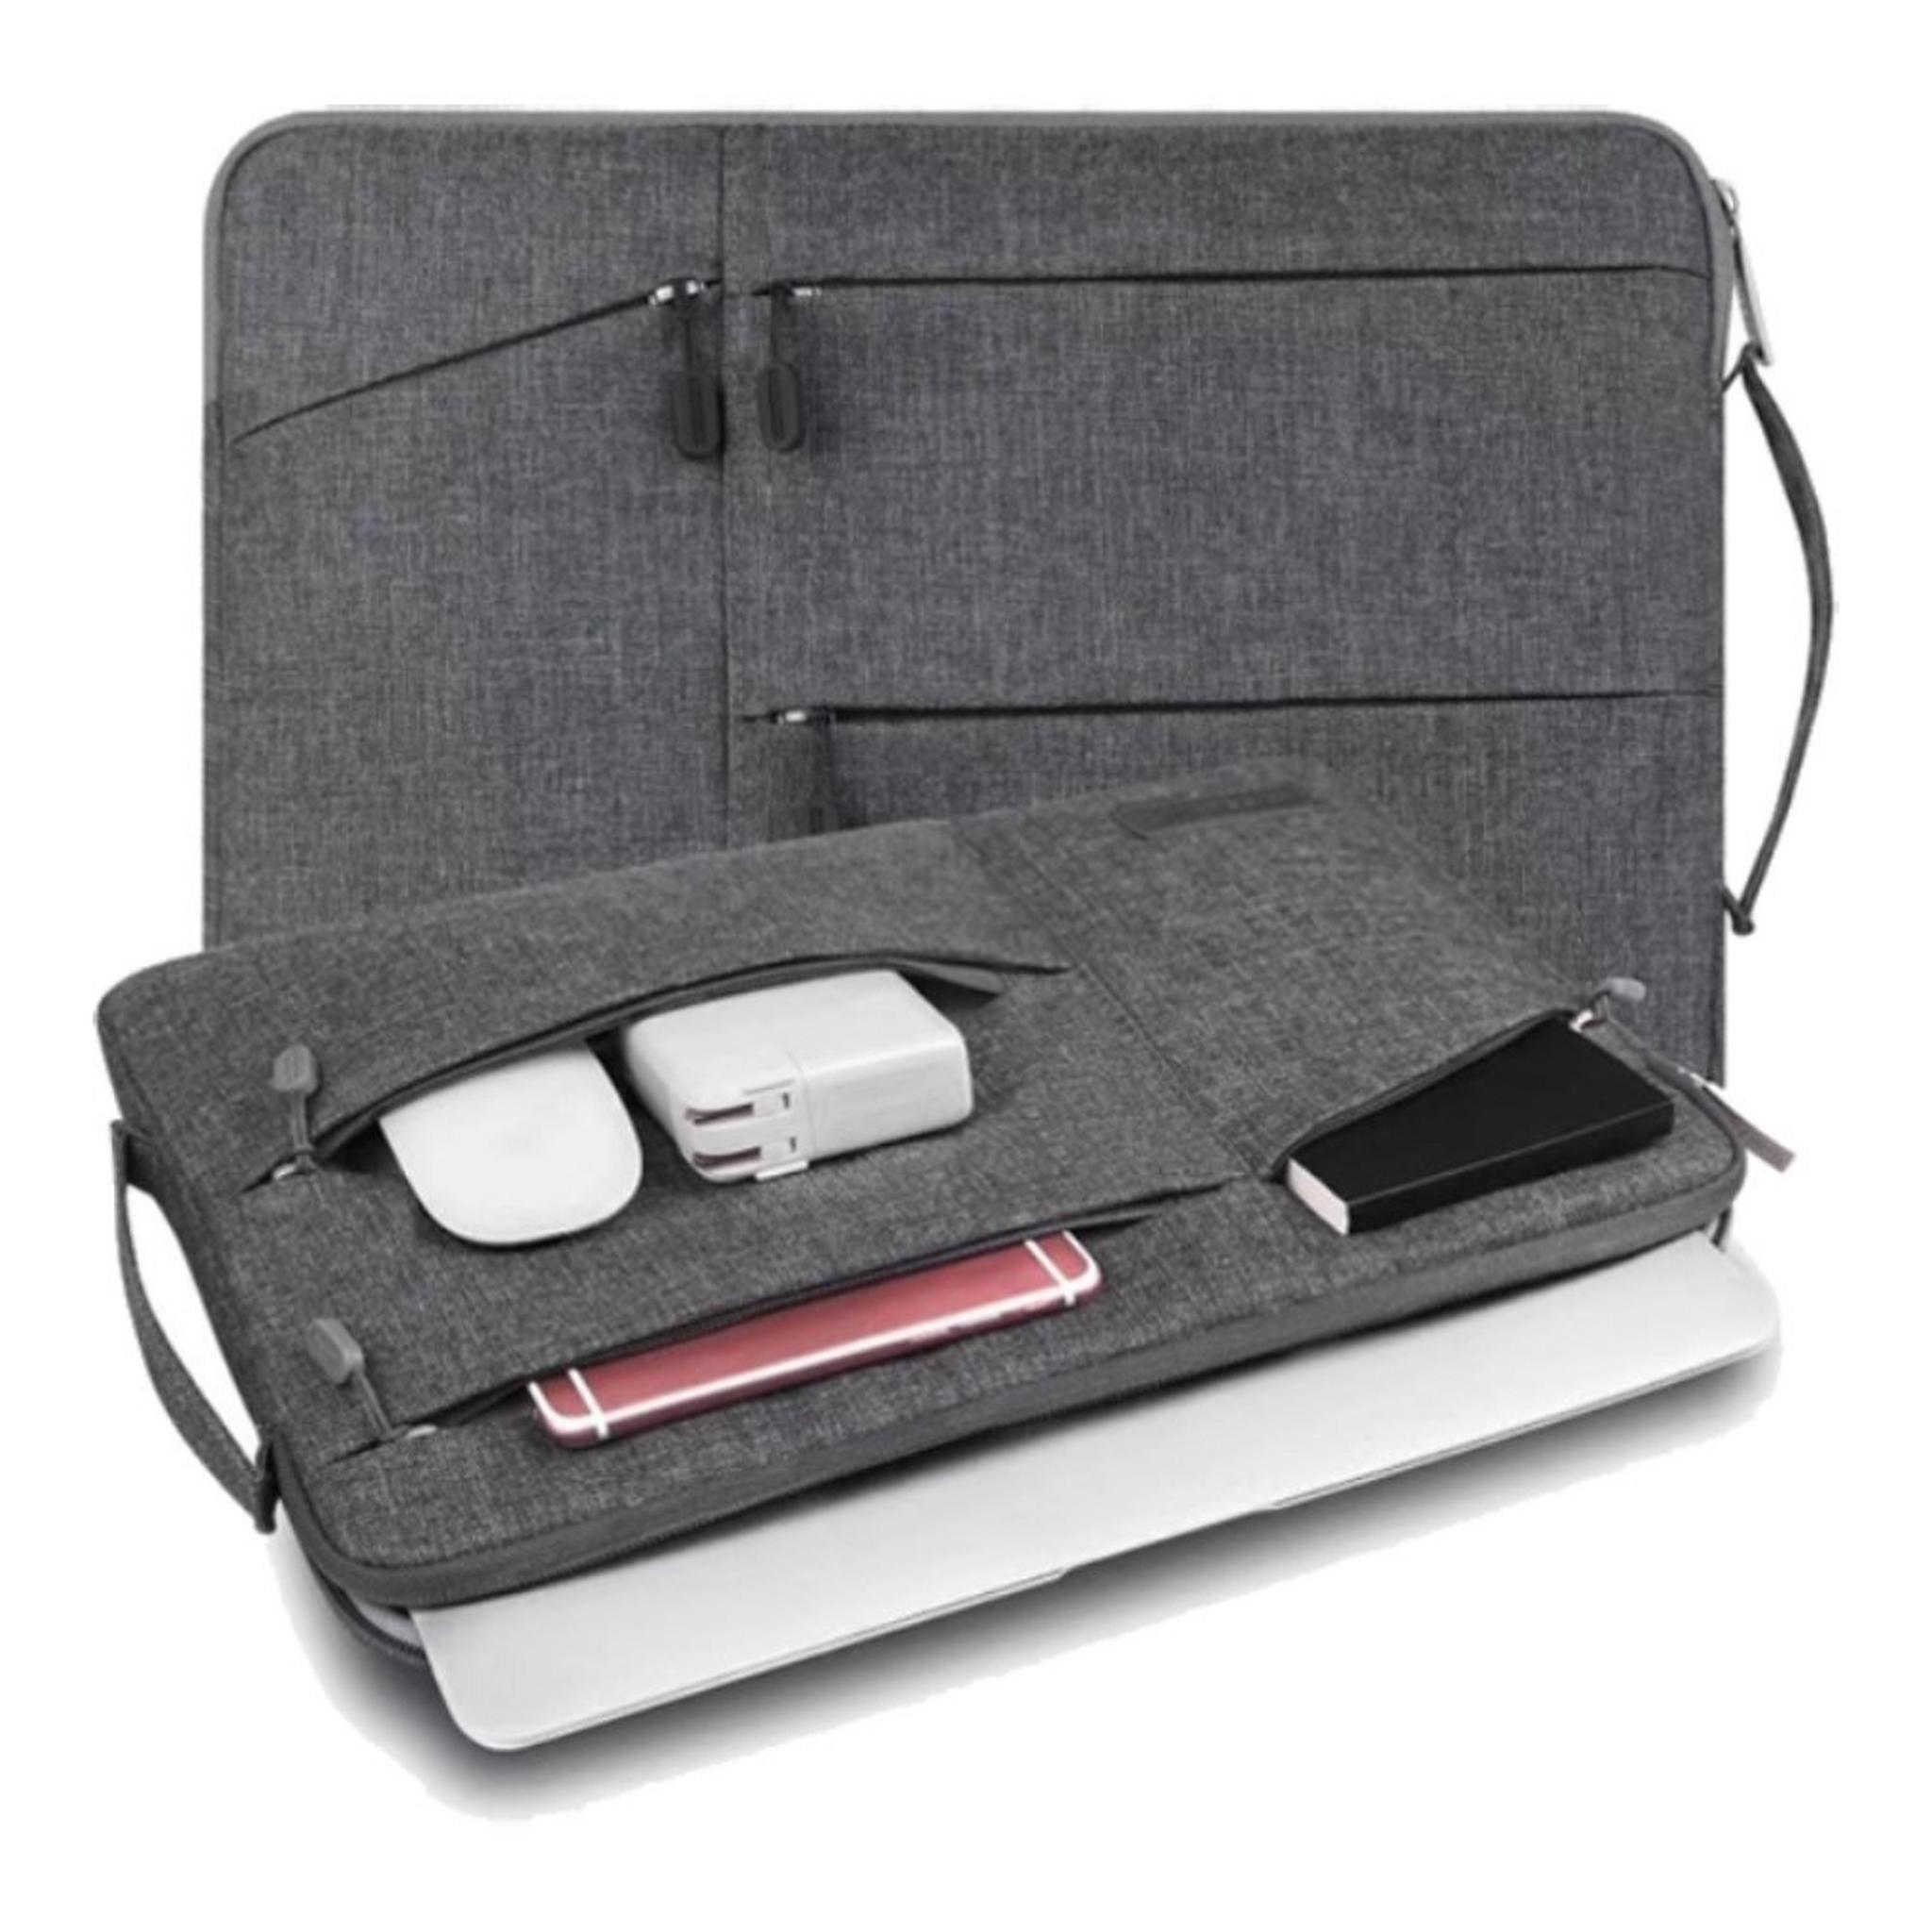 حقيبة بوكيت للابتوب بحجم 15.4 بوصة من ويو - رمادي